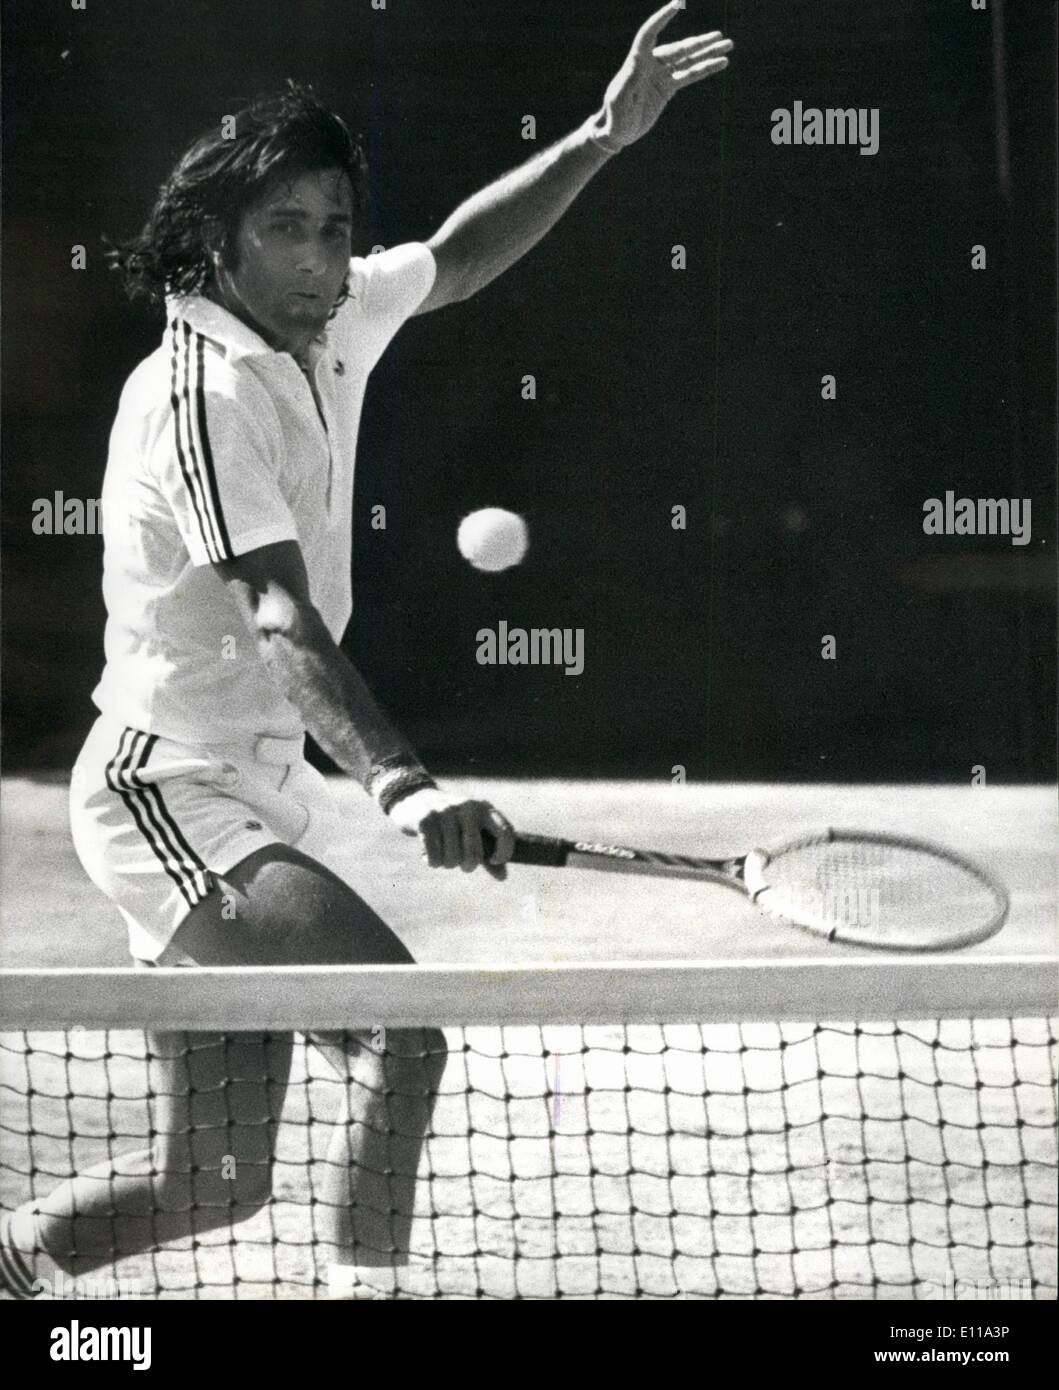 Jun. 06, 1976 - Wimbledon Championships - Nastase beats Pasarell in ...